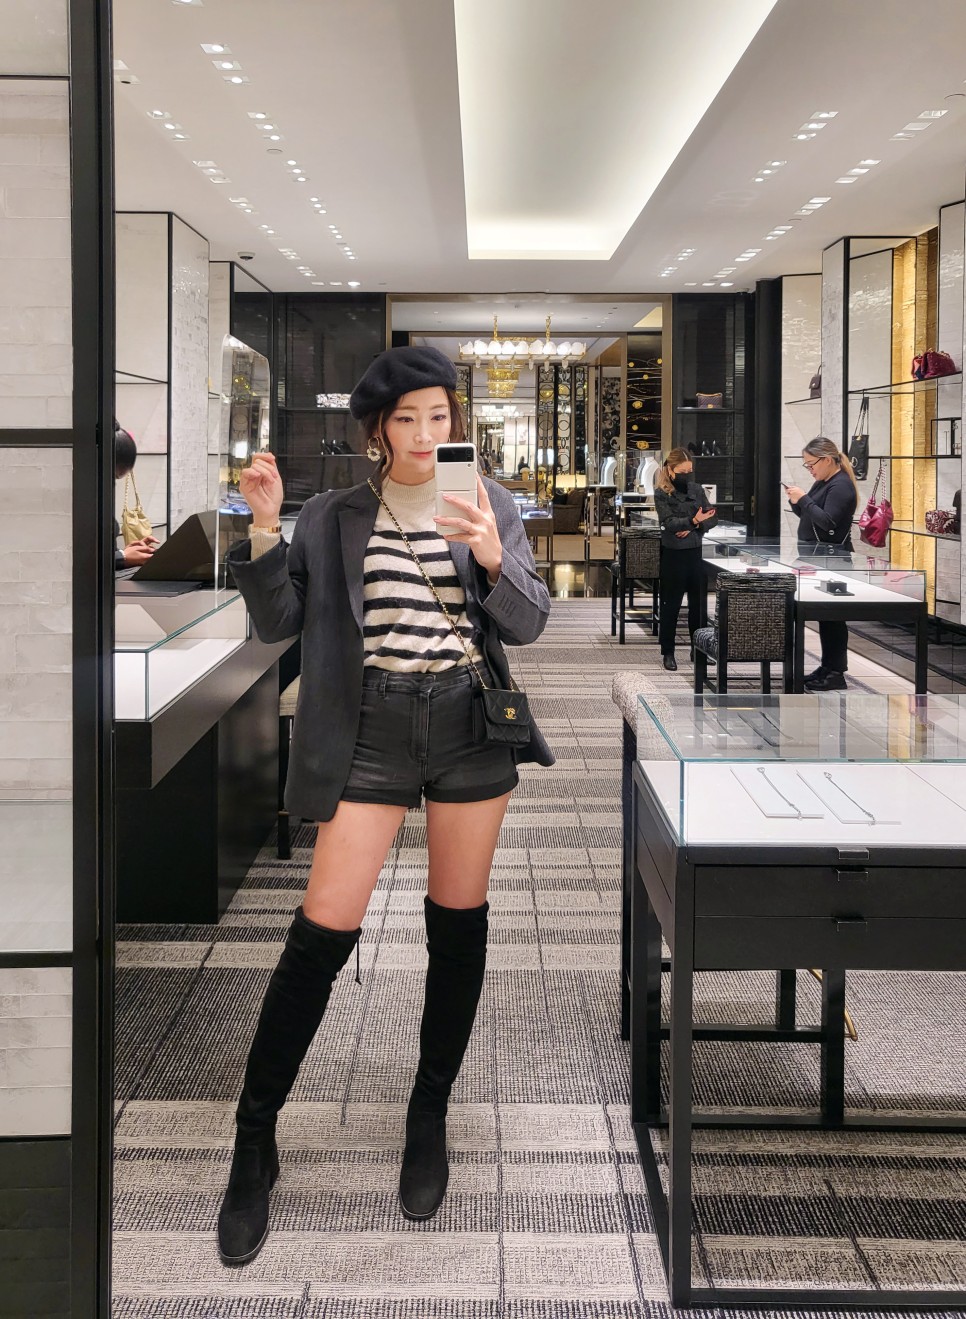 밴쿠버 쇼핑 생일주간 홀트랜프류 Chanel + Holt cafe + KEG 케그 스테이크!